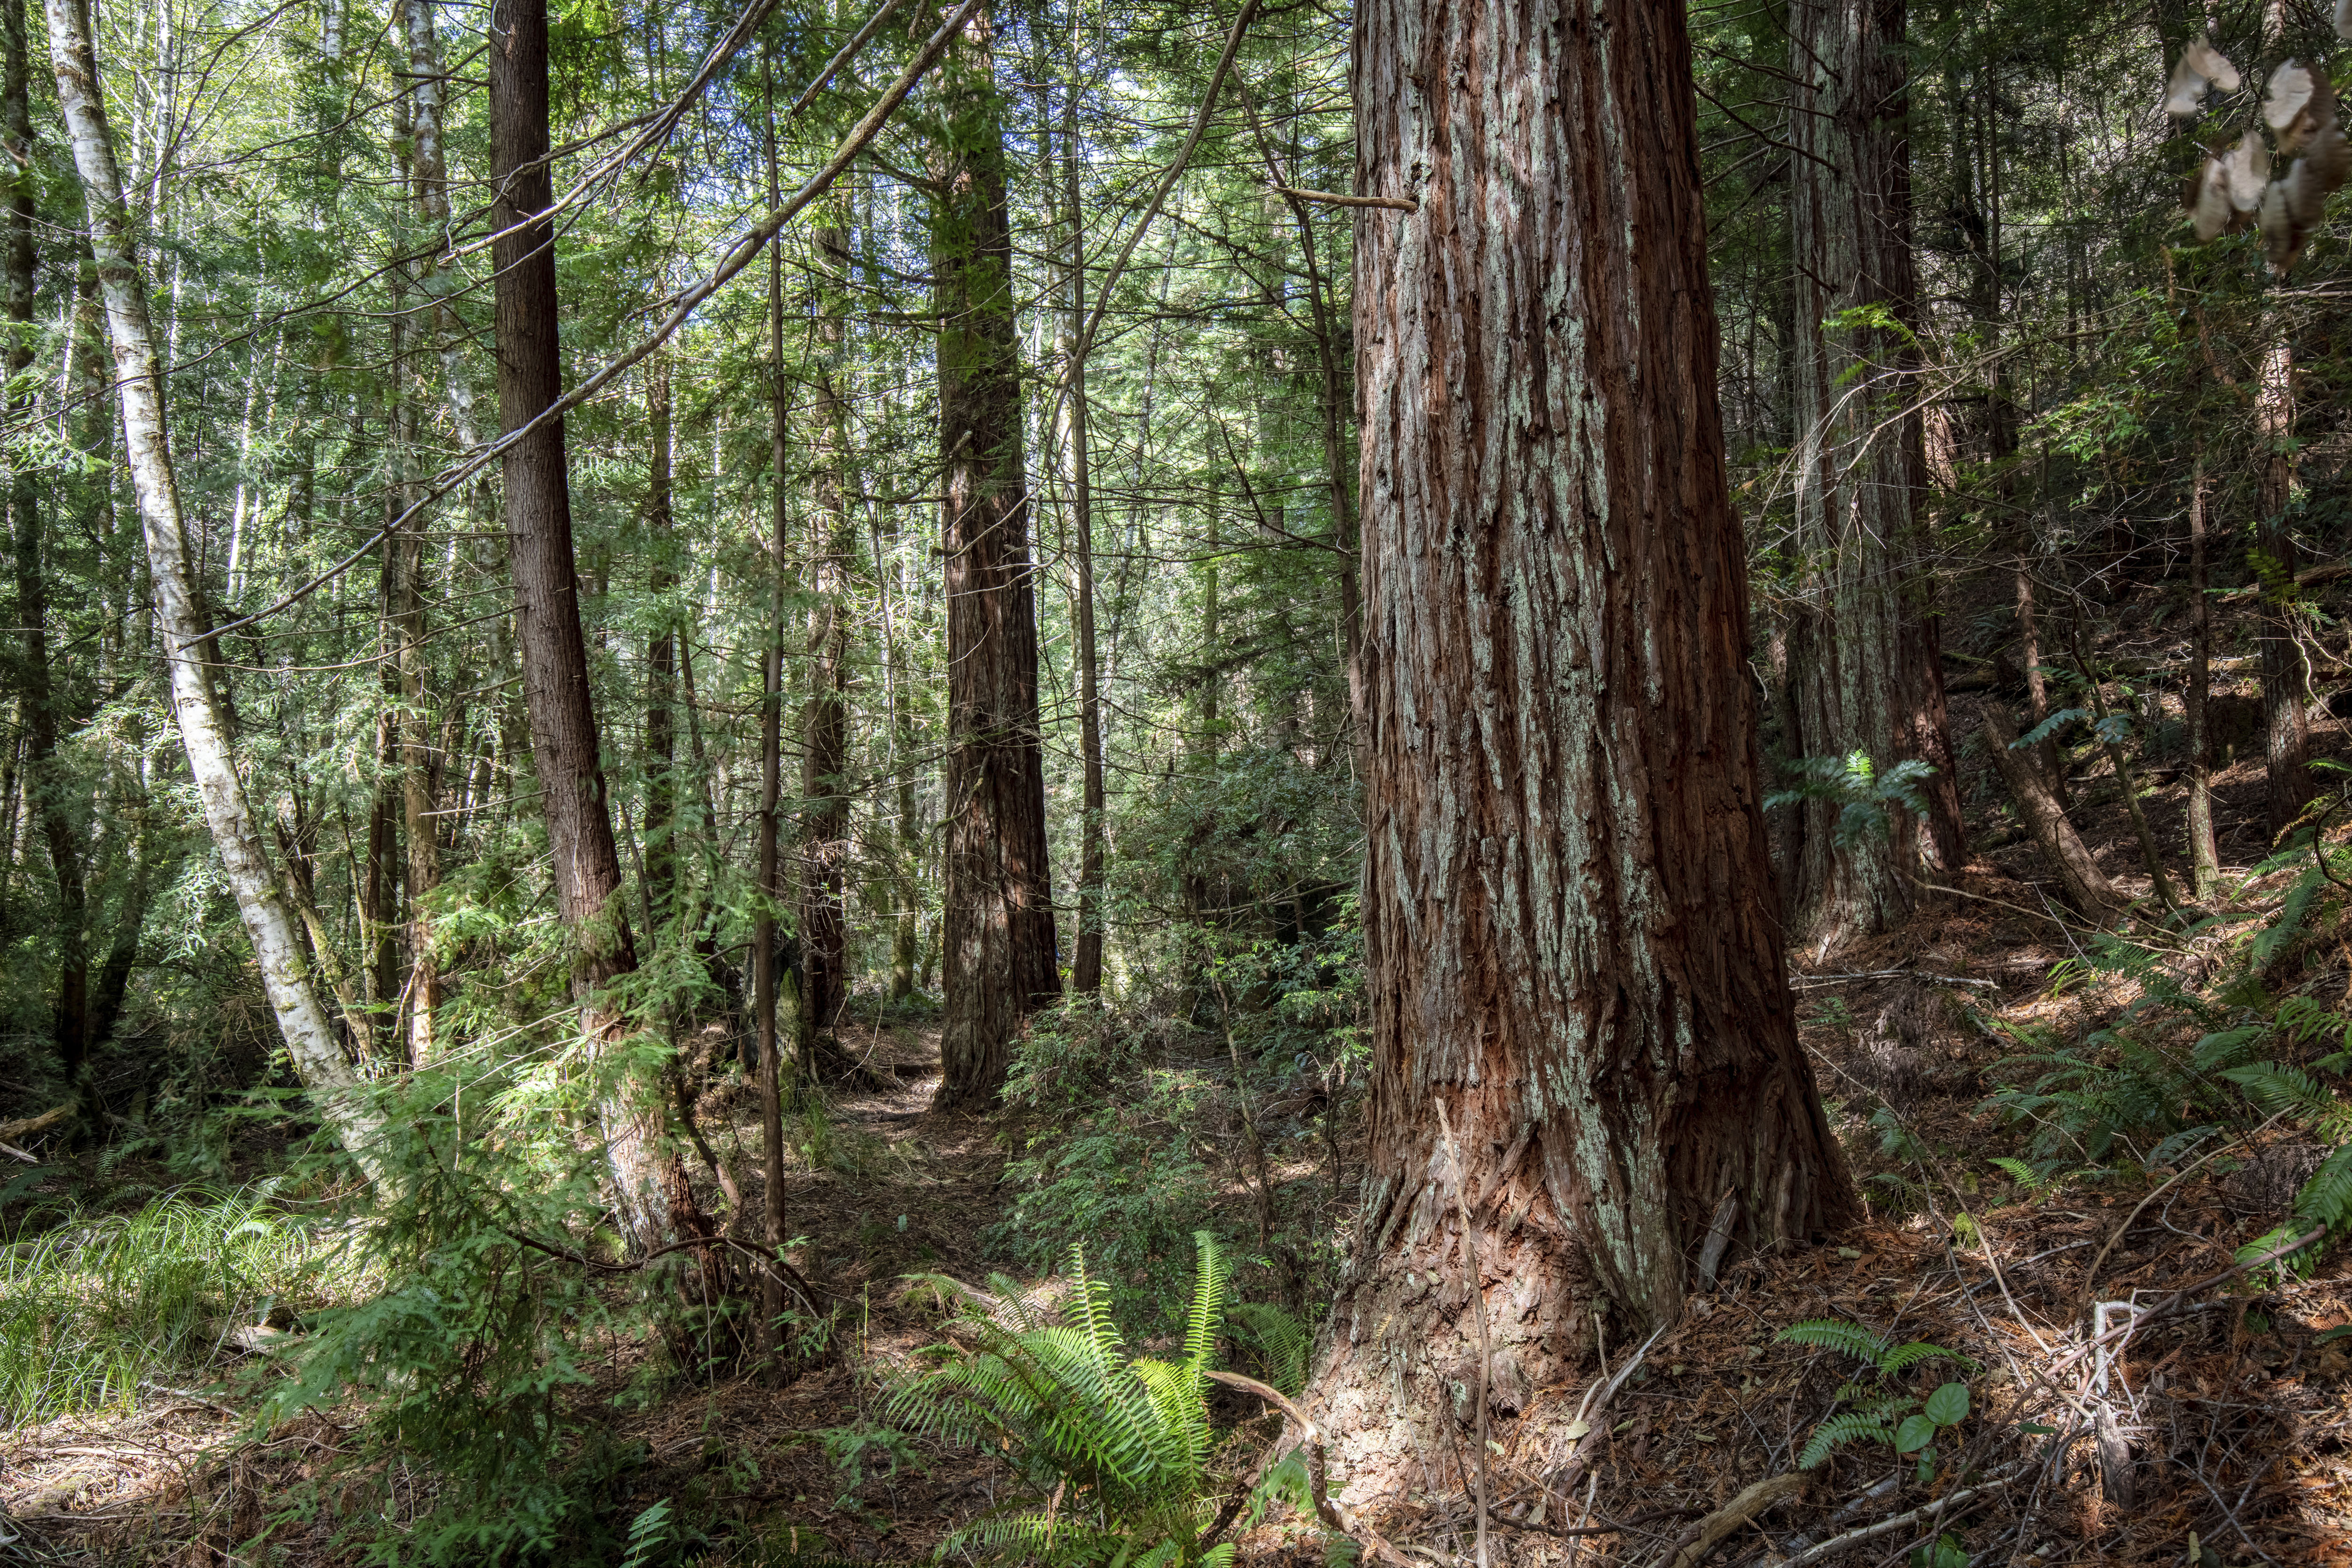 Un bosque de secuoyas en el condado de Mendocino, California (AP)

